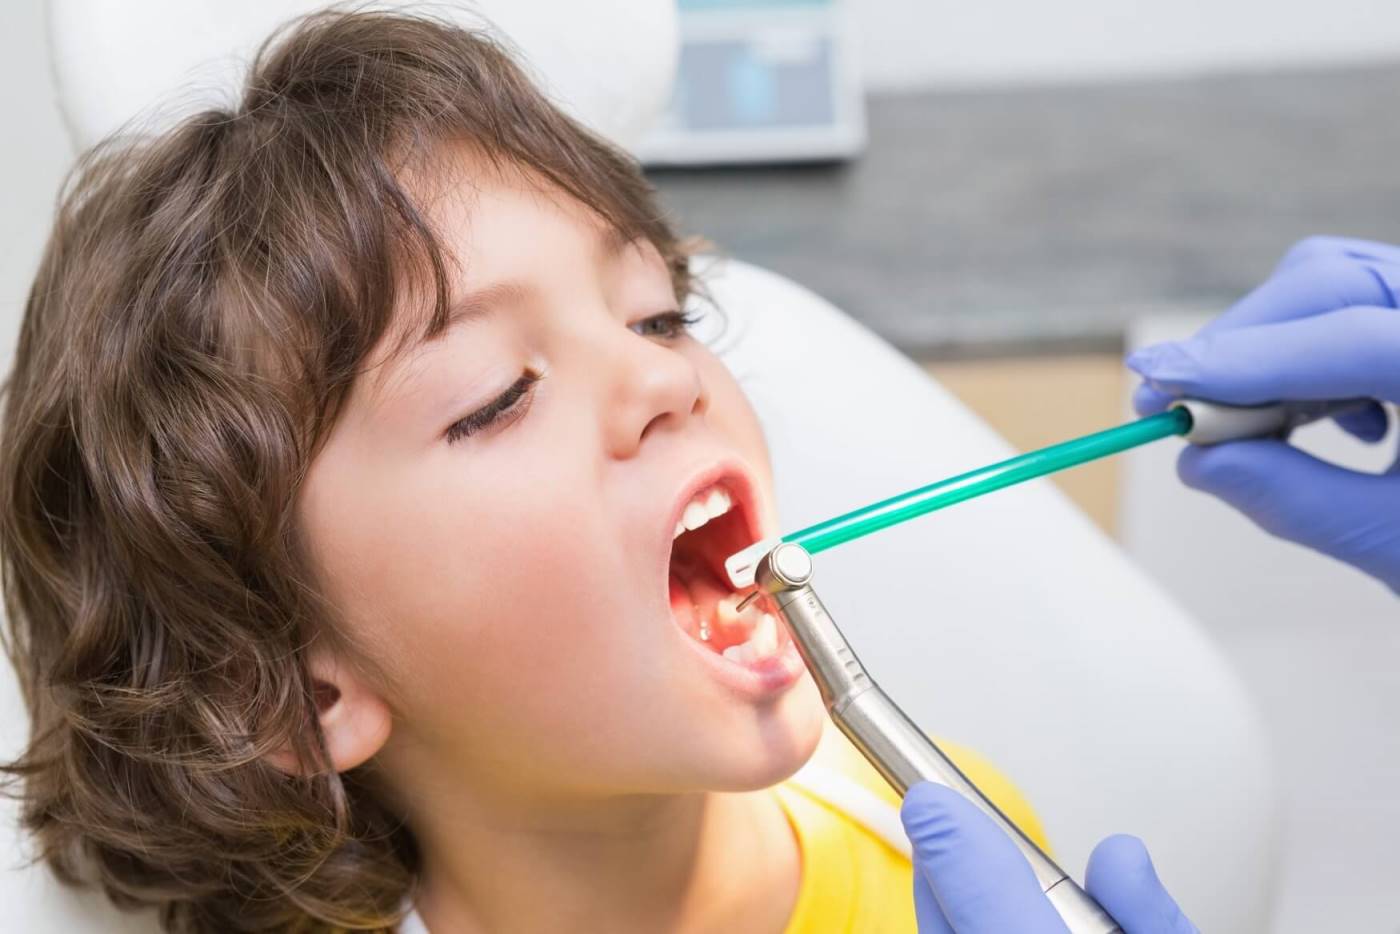 تاثیر تغذیه بر کیفیت دندان کودک